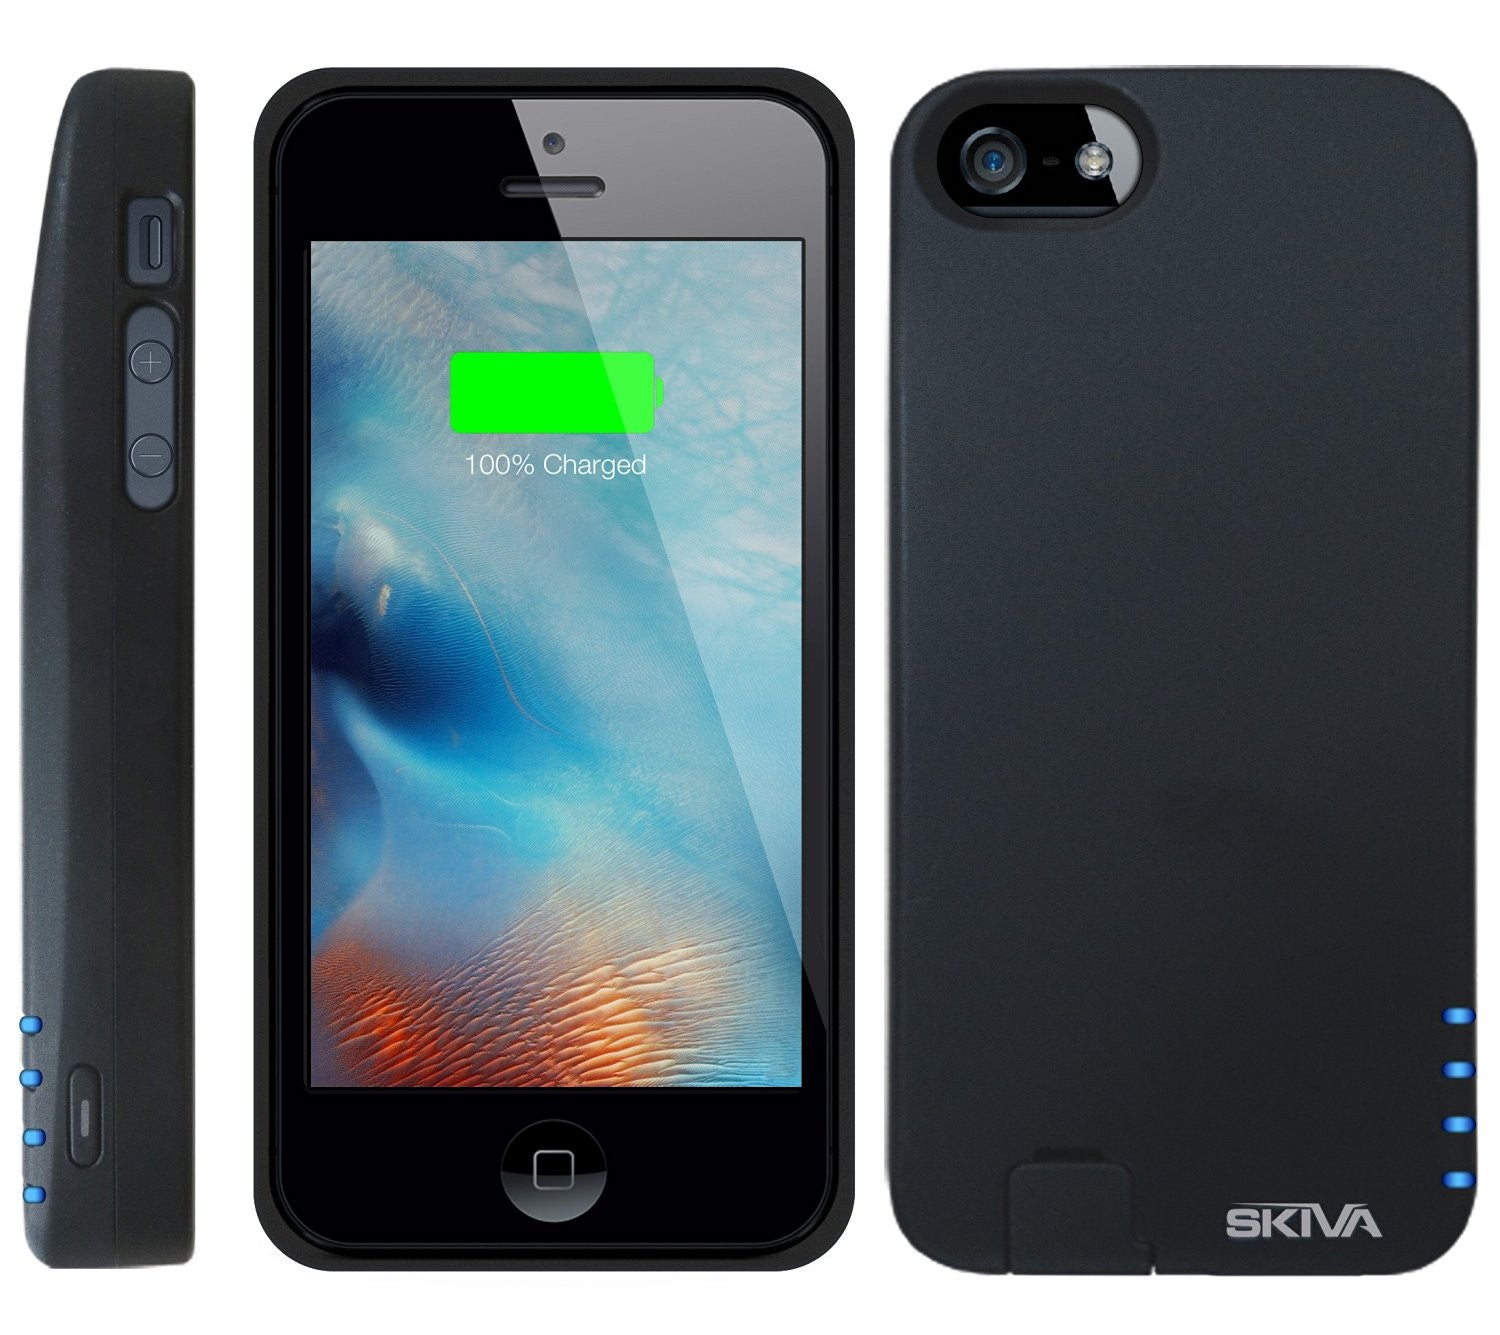 Oost onbetaald Leven van Apple MFi Certified] Skiva PowerFlow 2000mAh iPhone SE[4"] / 5s Porta